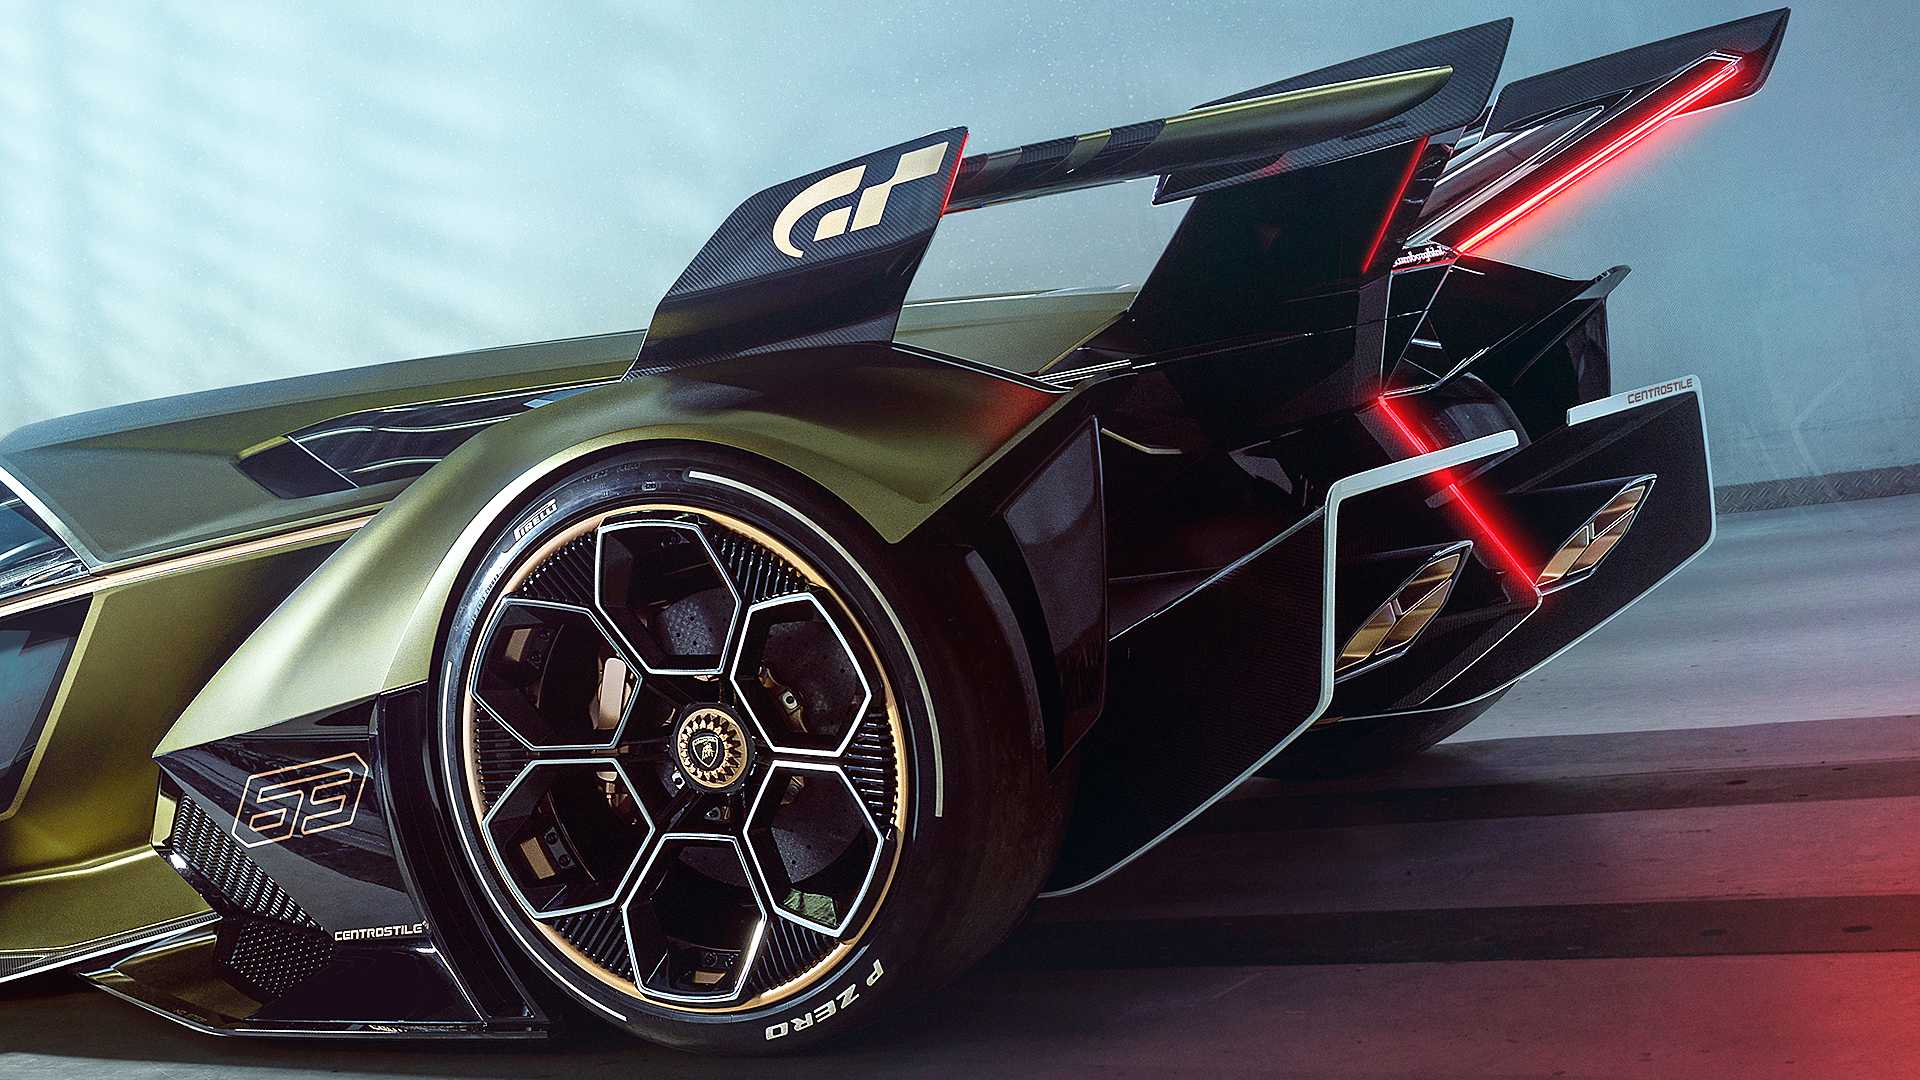 The Extreme Lamborghini V12 Vision Gran Turismo Concept